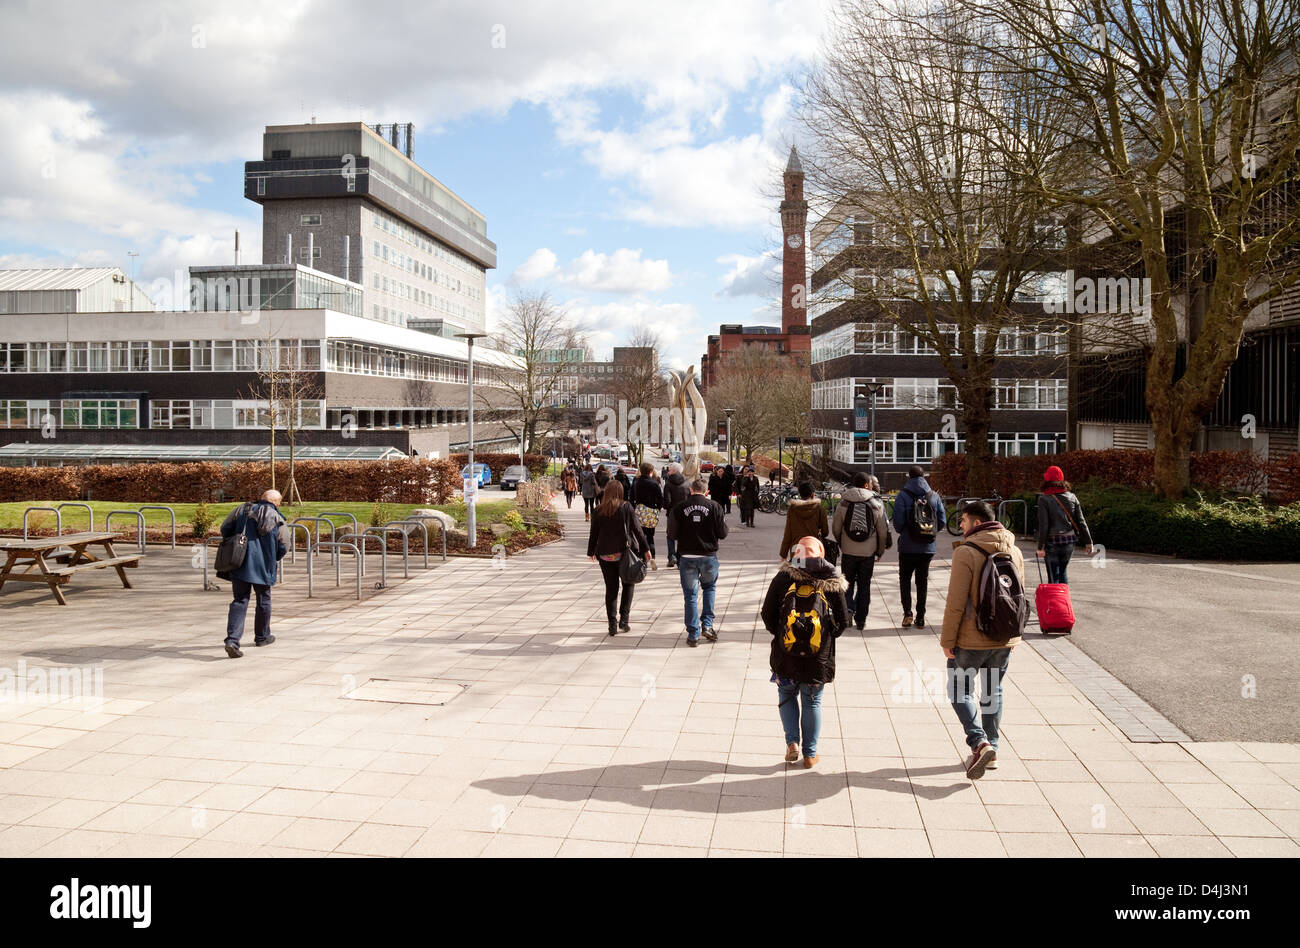 Campus de la Universidad de Birmingham, que caminaban, Edgbaston Campus, Birmingham, Reino Unido Foto de stock